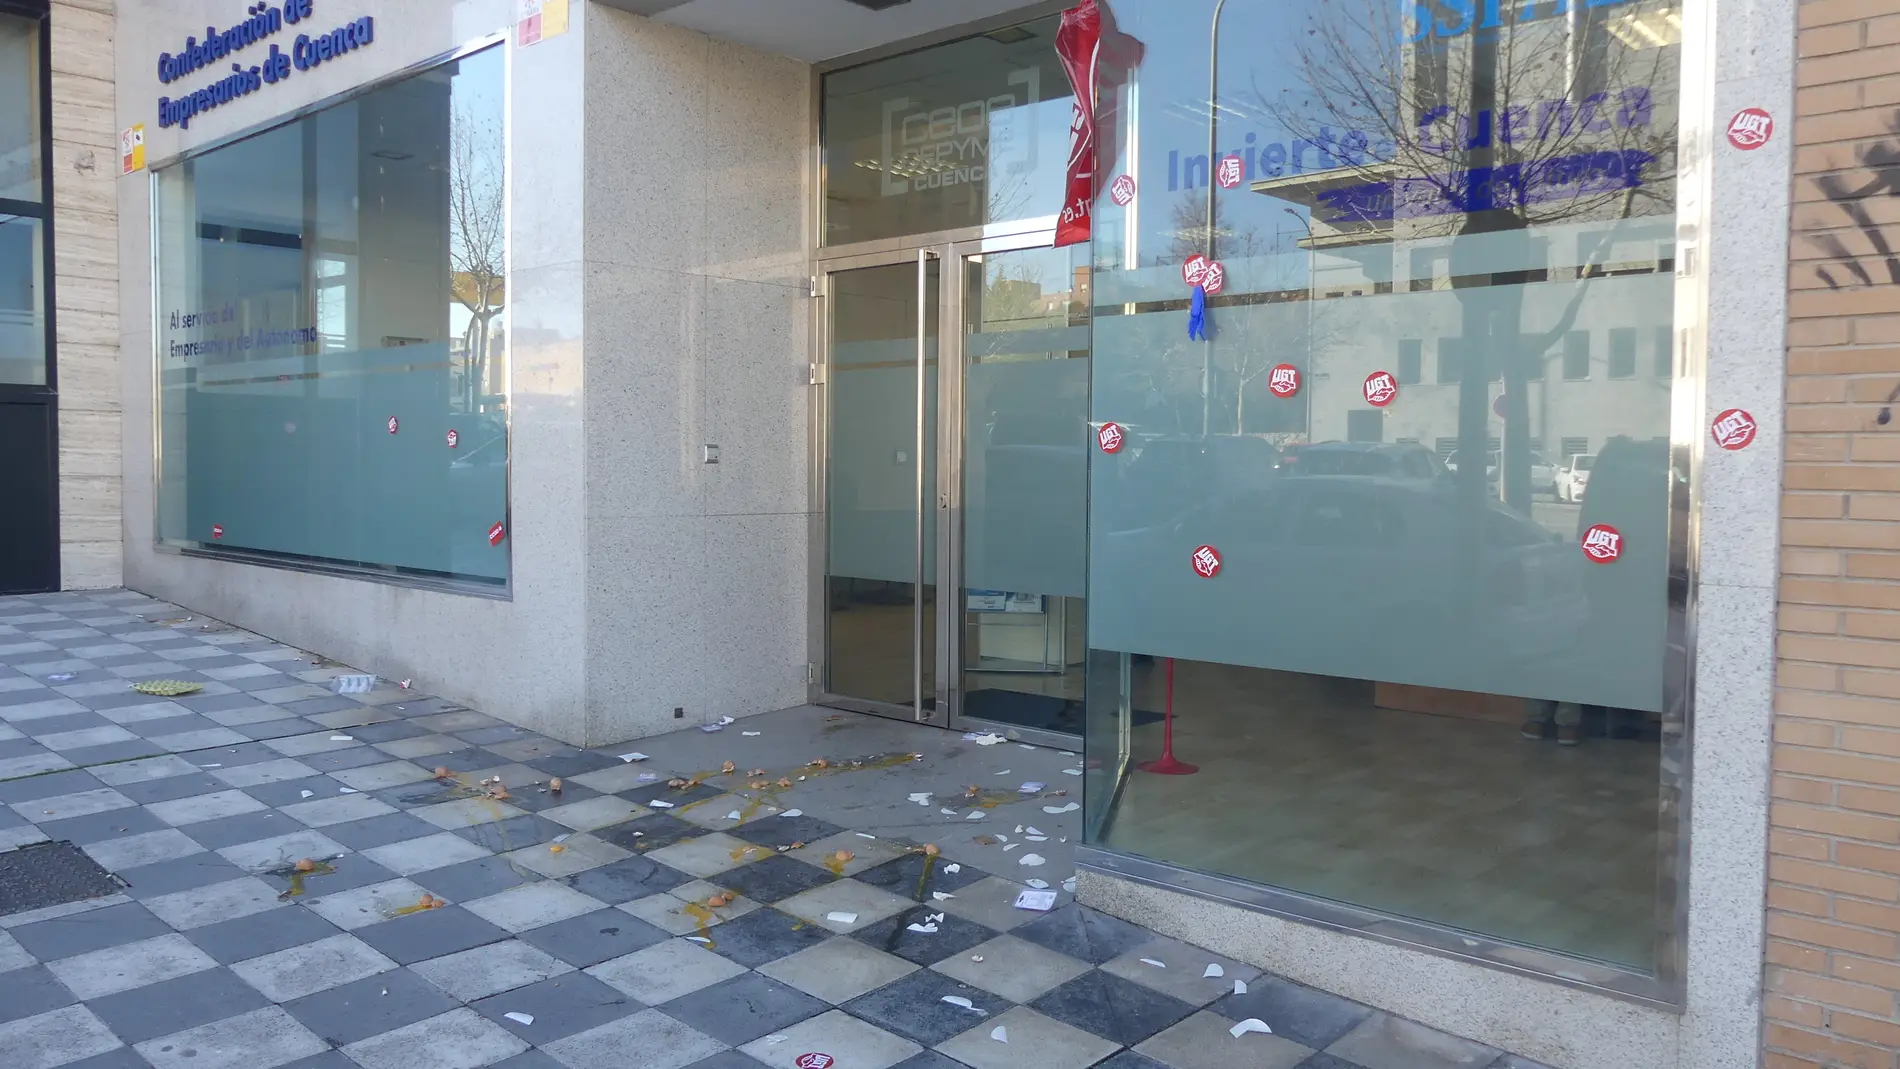 Lanzan huevos a la sede de Ceoe Cuenca durante las protestas de la huelga limpieza